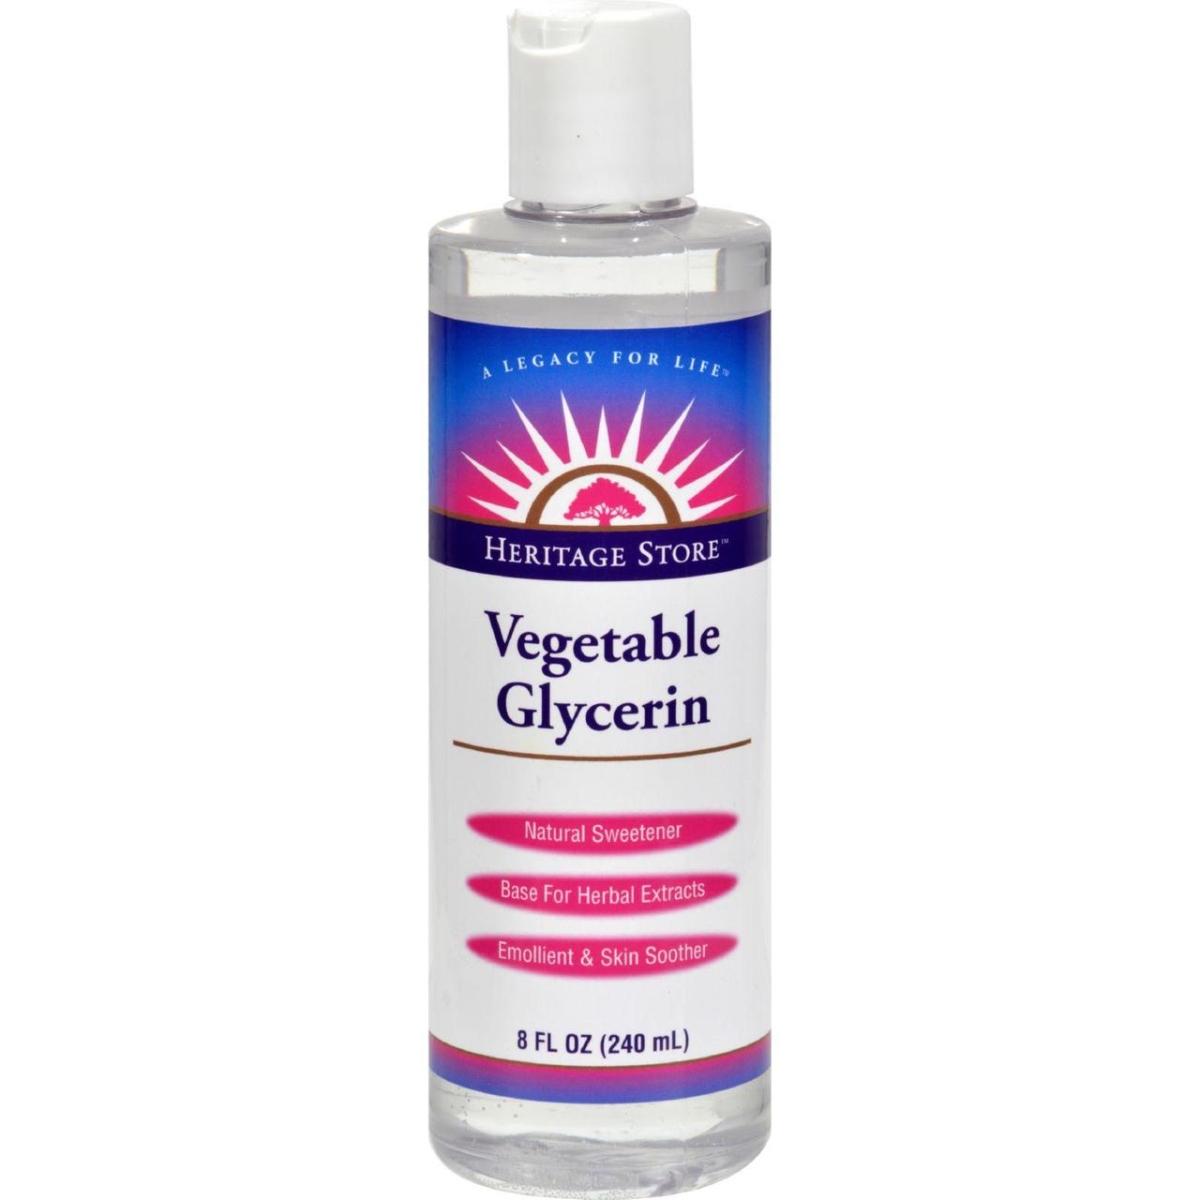 Hg1157320 8 Fl Oz Vegetable Glycerin